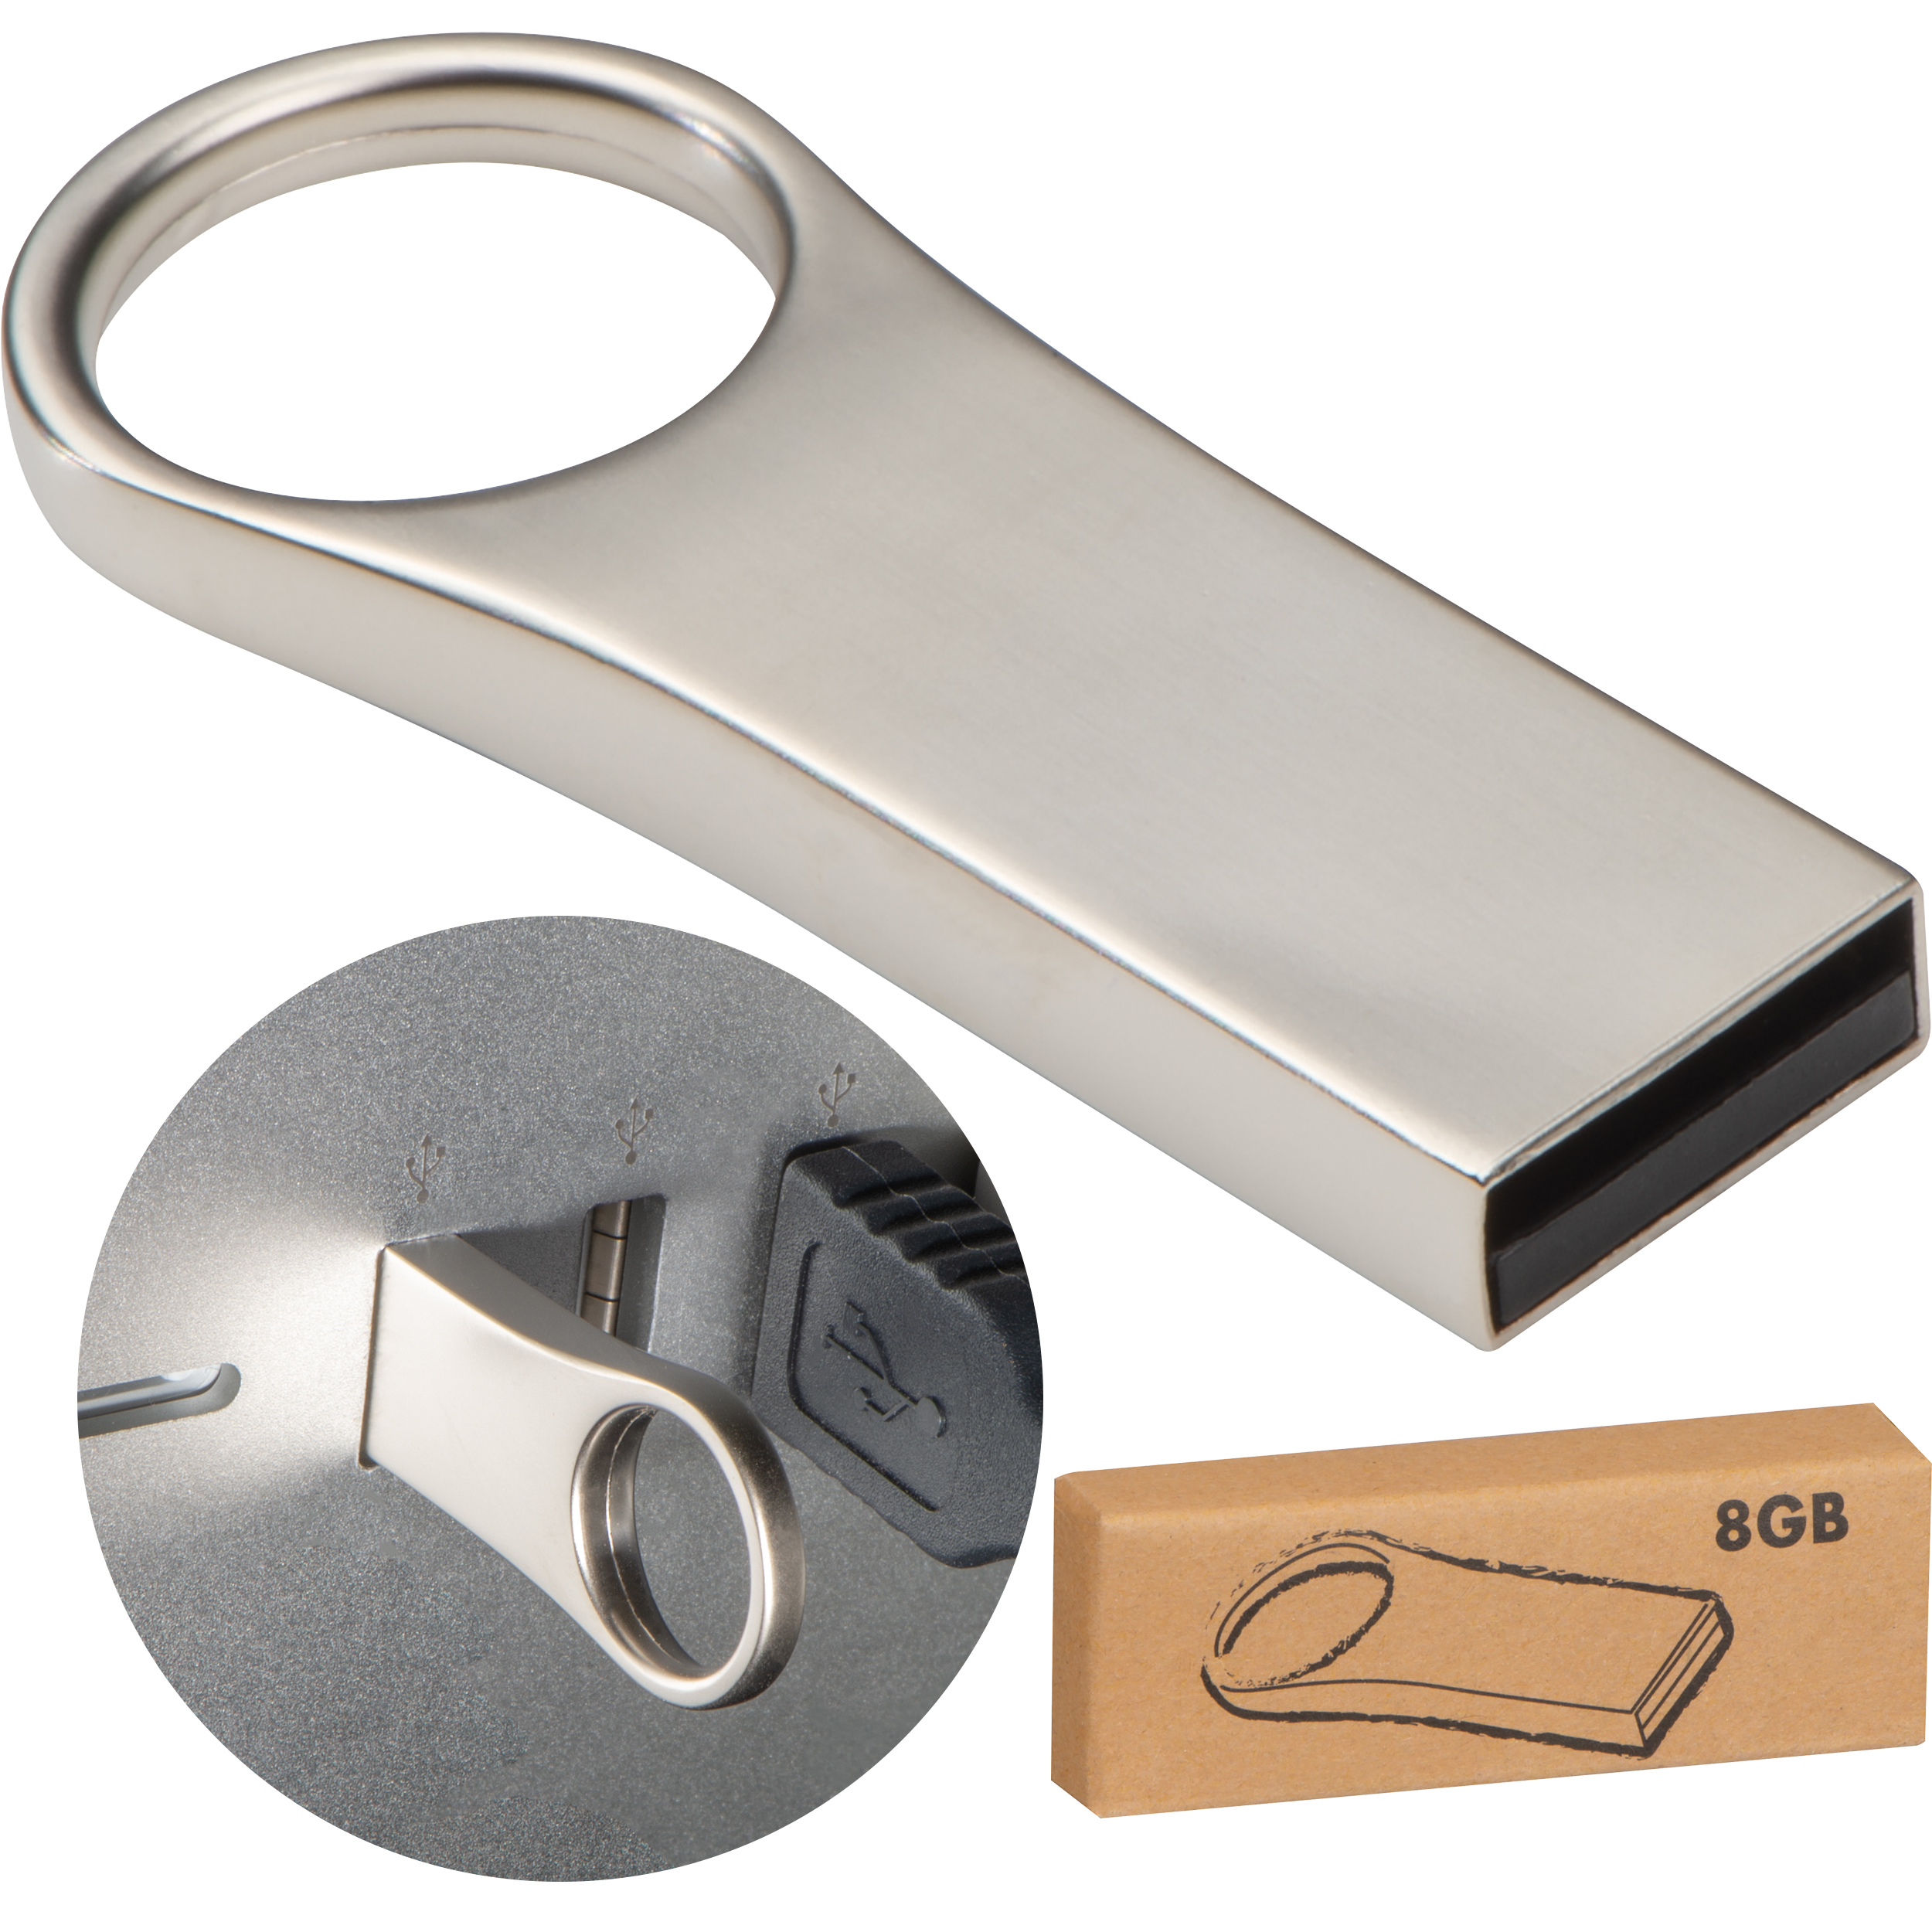 Engraved Metal USB - Kirby Muxloe - Bramdean